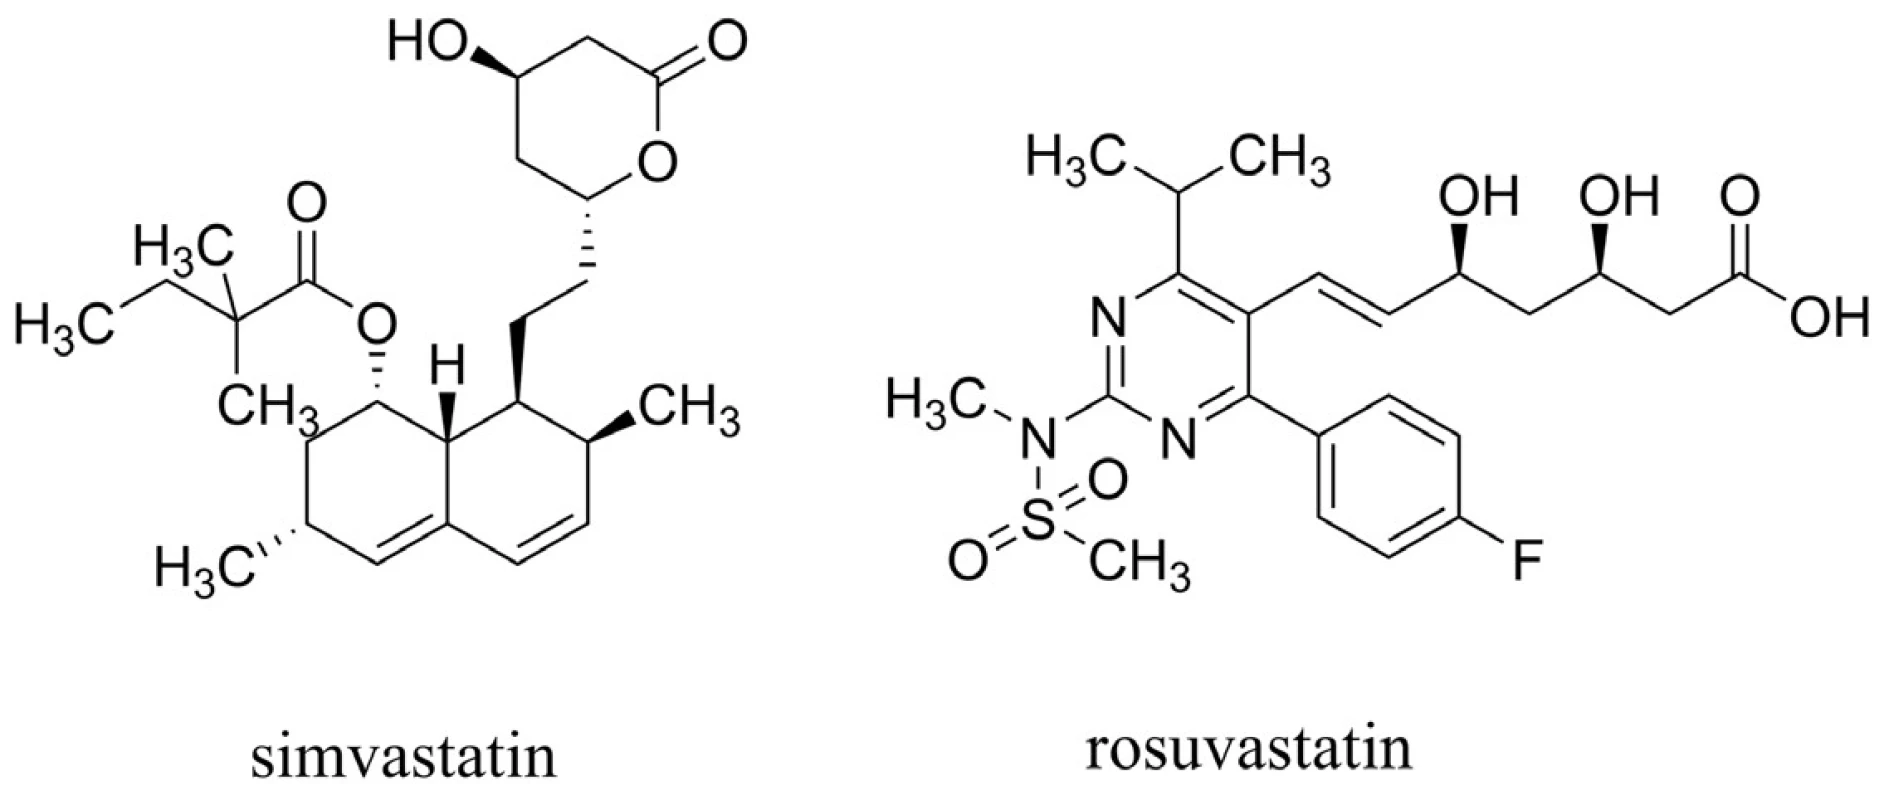 Simvastatin (zástupce první generace statinů) a rosuvastatin (představující druhou generaci statinů)